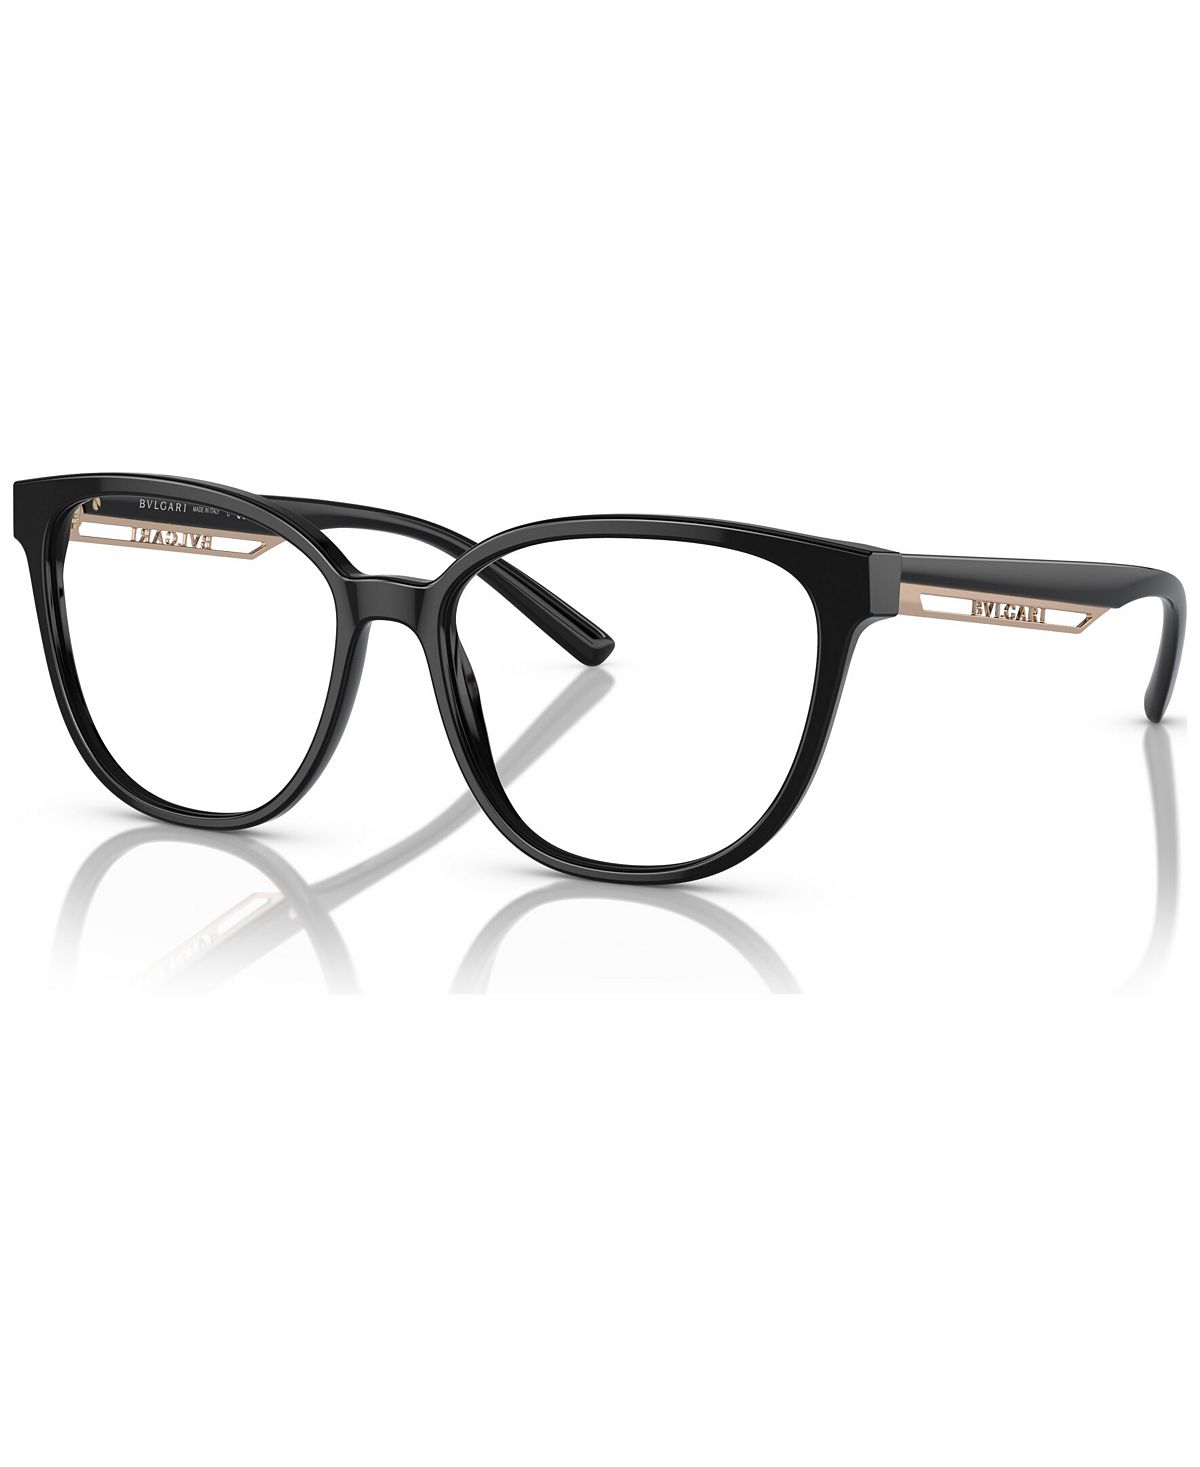 Женские квадратные очки, BV4219 55 BVLGARI, черный цена и фото